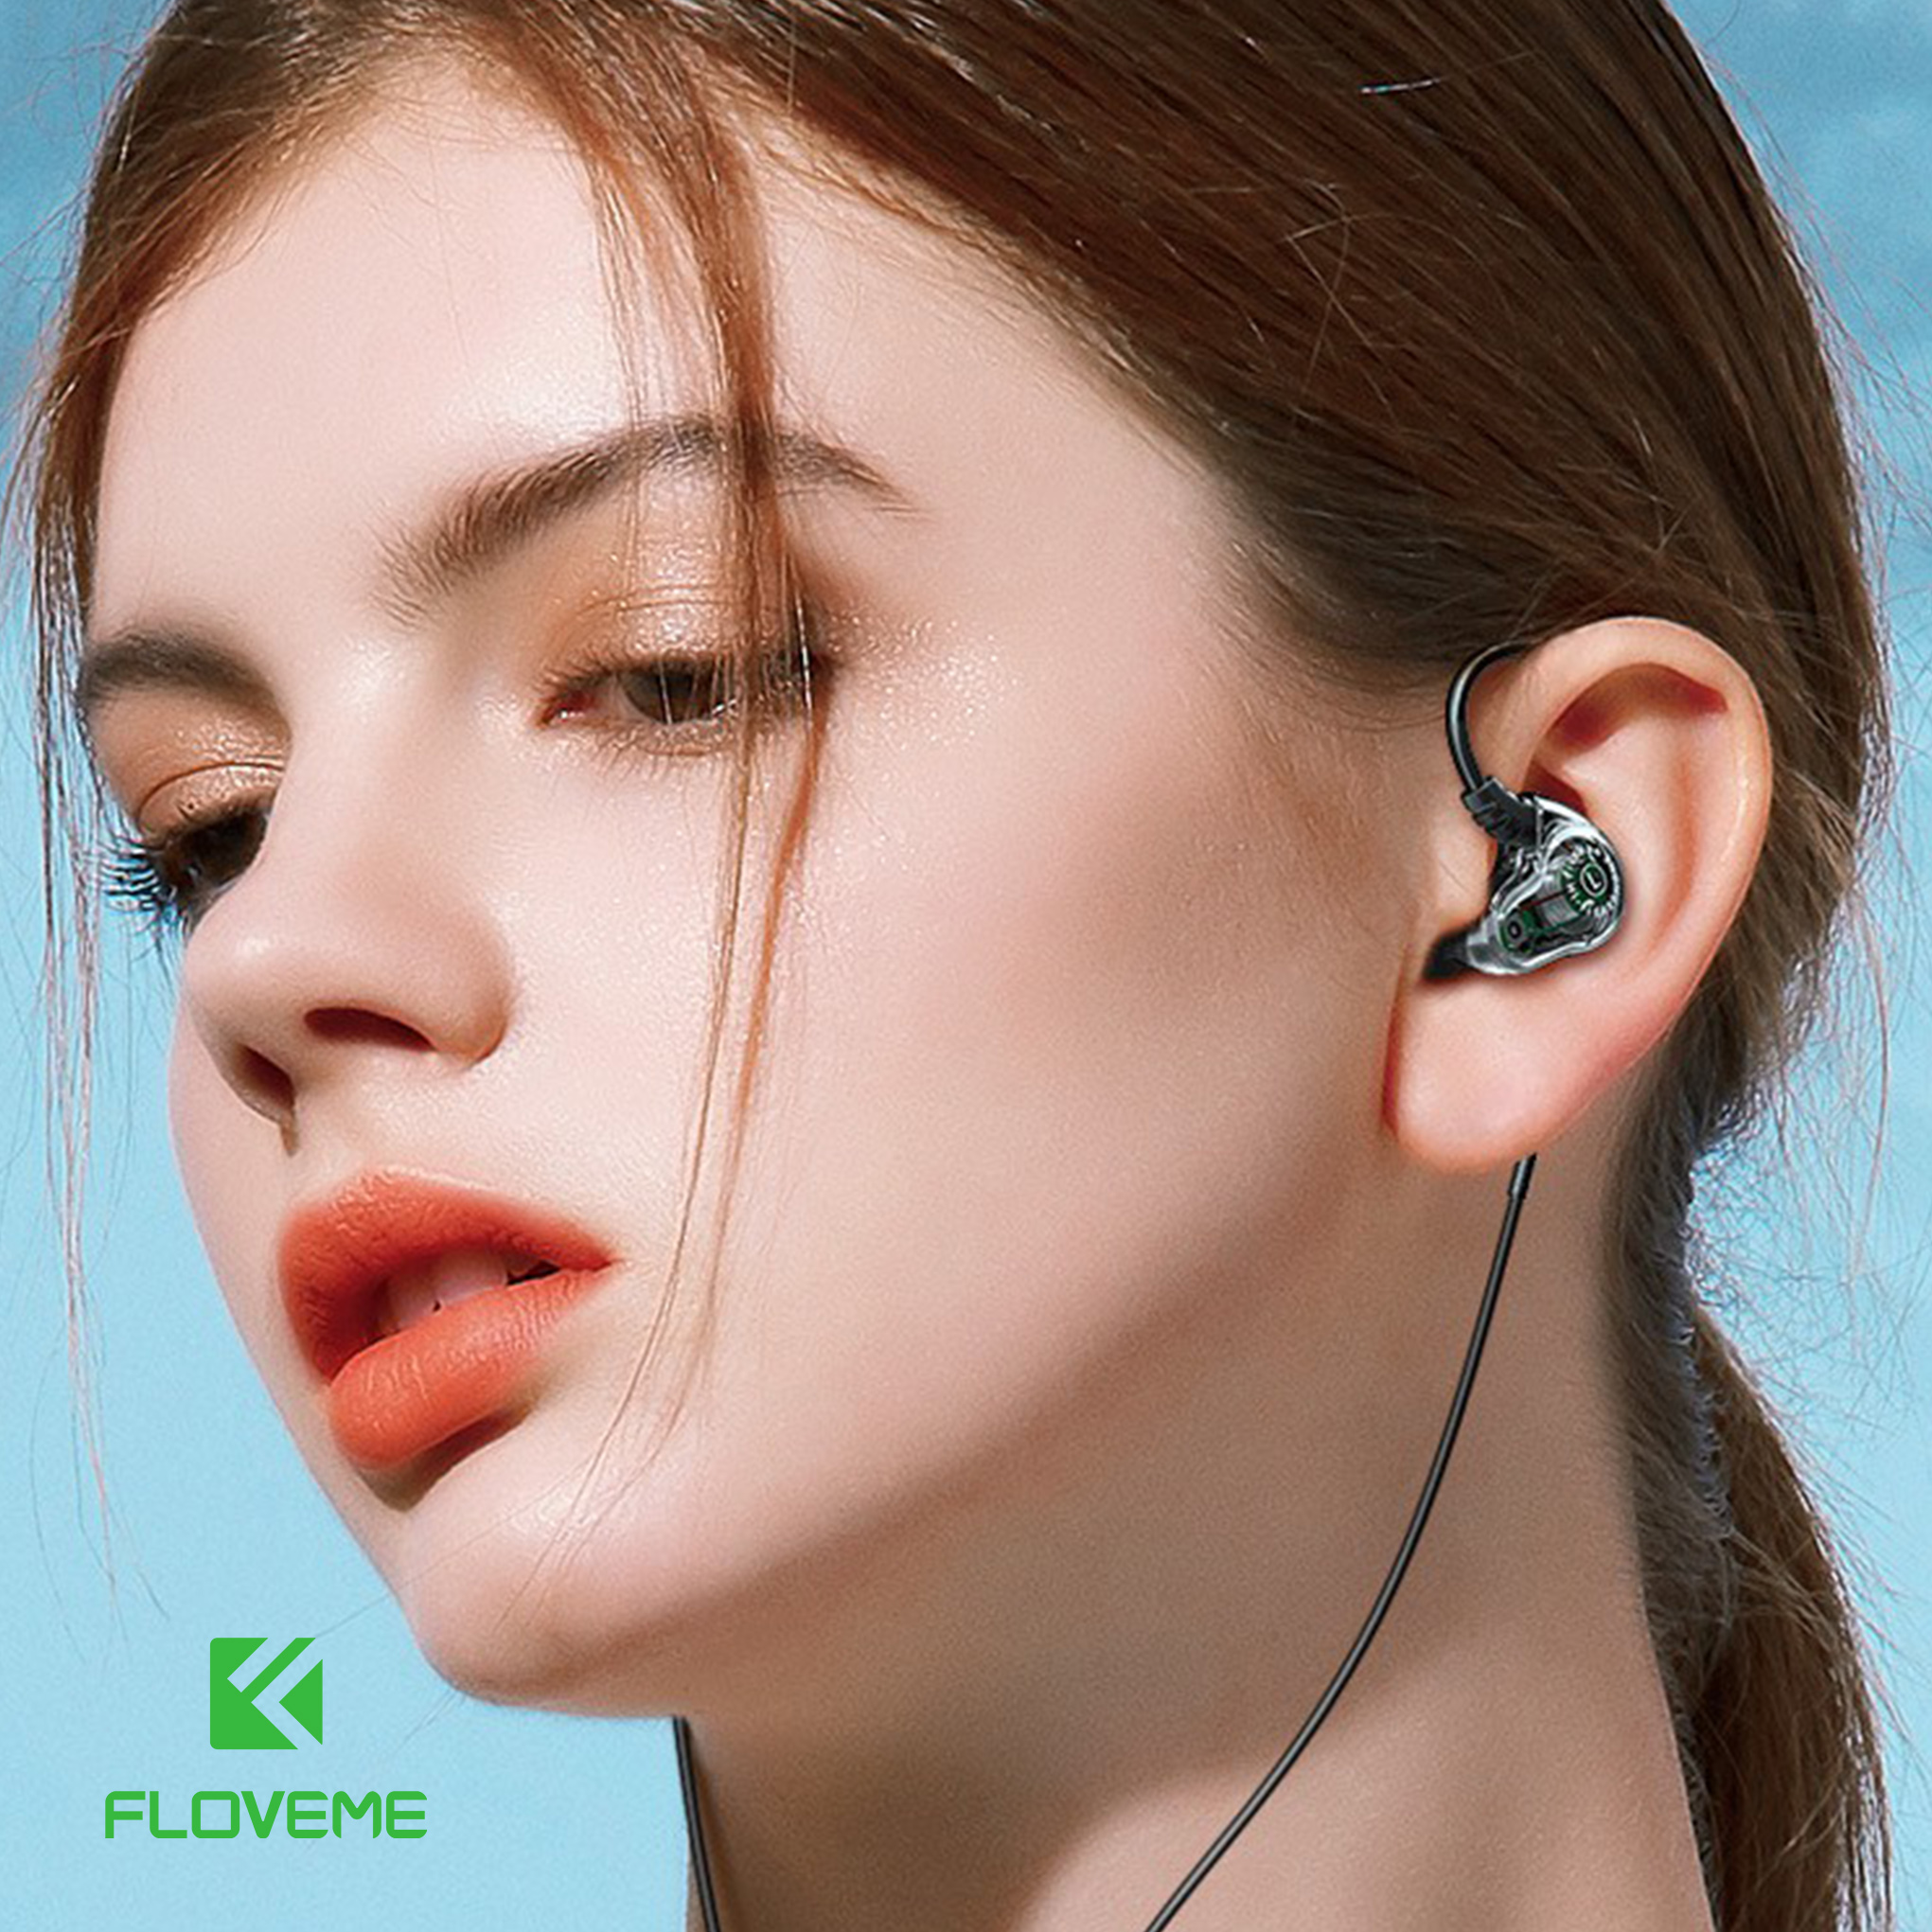 Tai nghe tinh thể FLOVEME 610A - Công nghệ loa kép - Âm thanh sống động - Mic đàm thoại rõ ràng - Hàng chính hãng